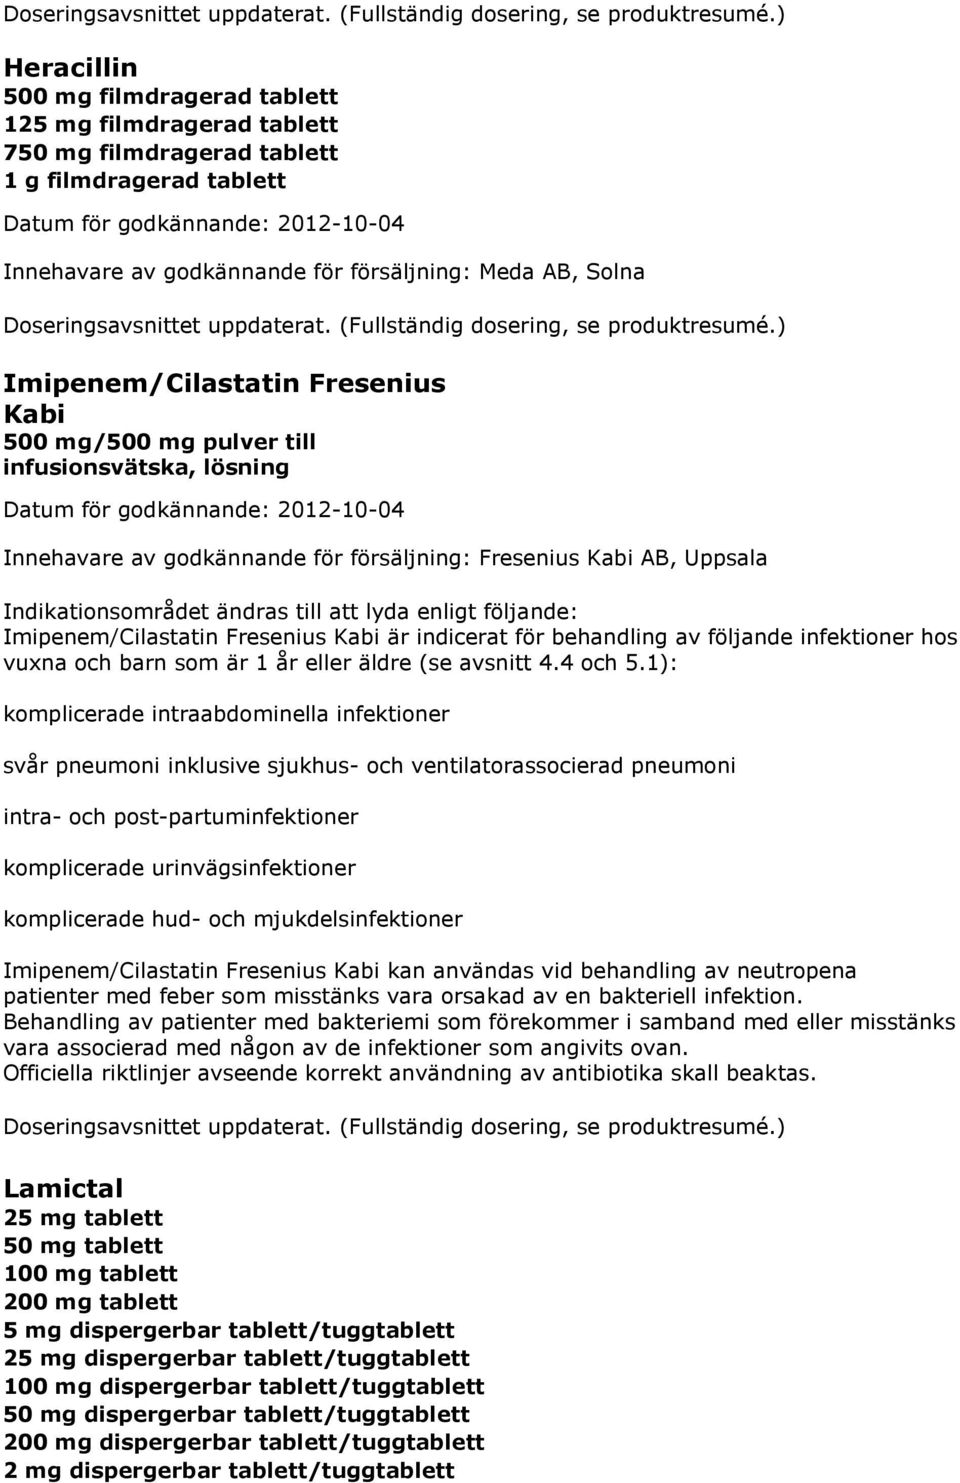 Imipenem/Cilastatin Fresenius Kabi 500 mg/500 mg pulver till infusionsvätska, lösning Innehavare av godkännande för försäljning: Fresenius Kabi AB, Uppsala Indikationsområdet ändras till att lyda